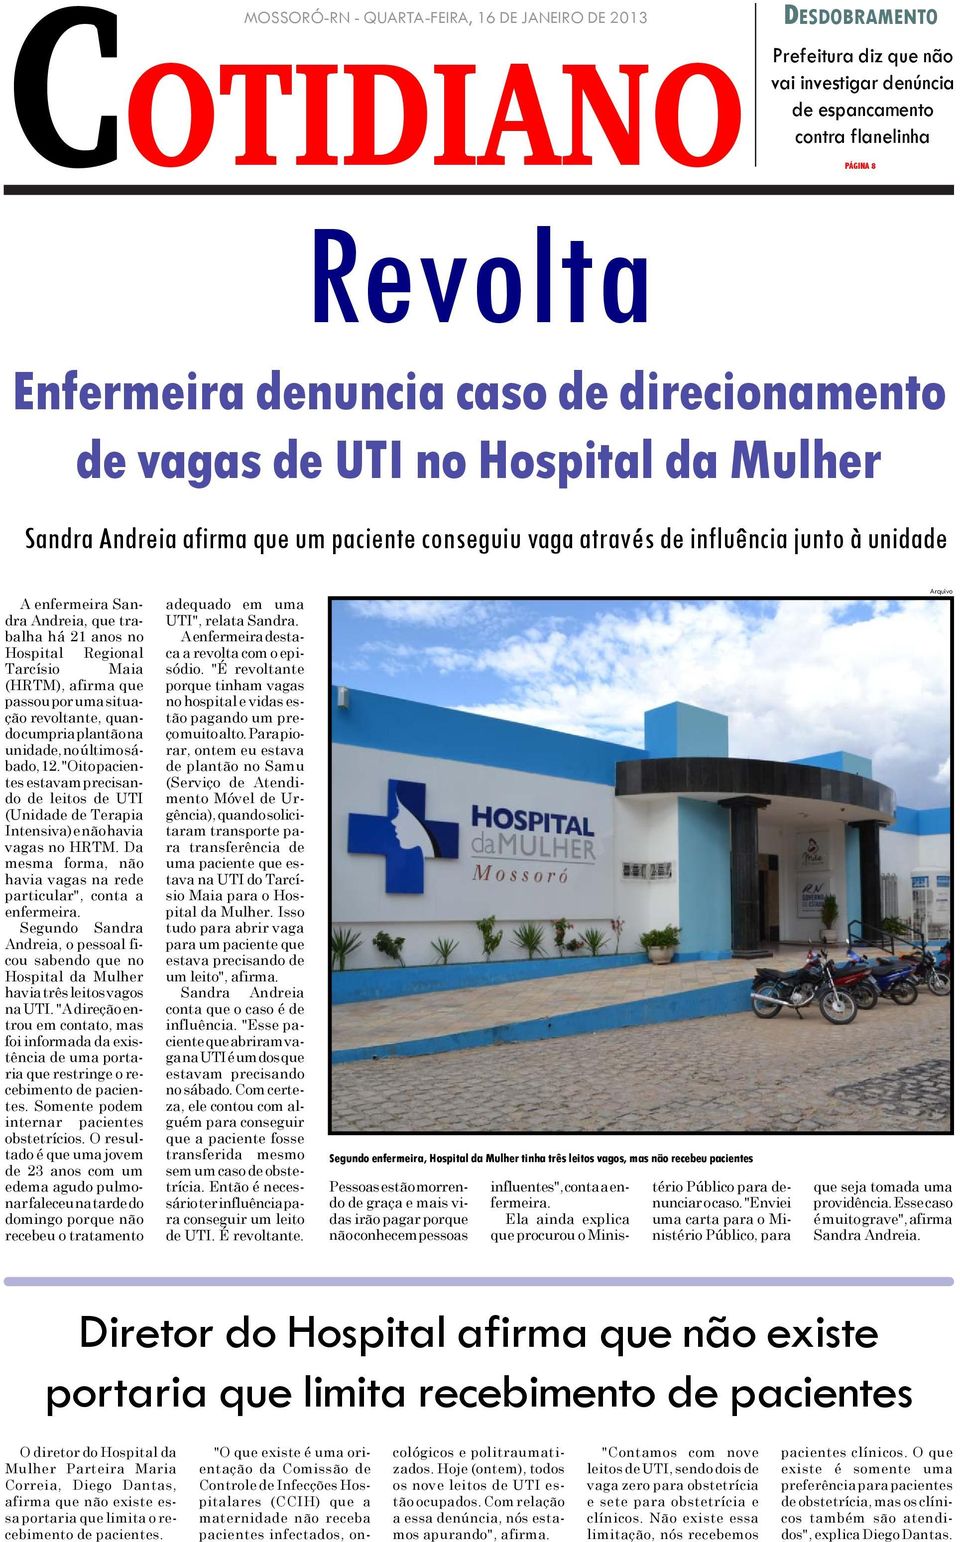 21 anos no Hospital Regional Tarcísio Maia (HRTM), afirma que passou por uma situação revoltante, quando cumpria plantão na unidade, no último sábado, 12.